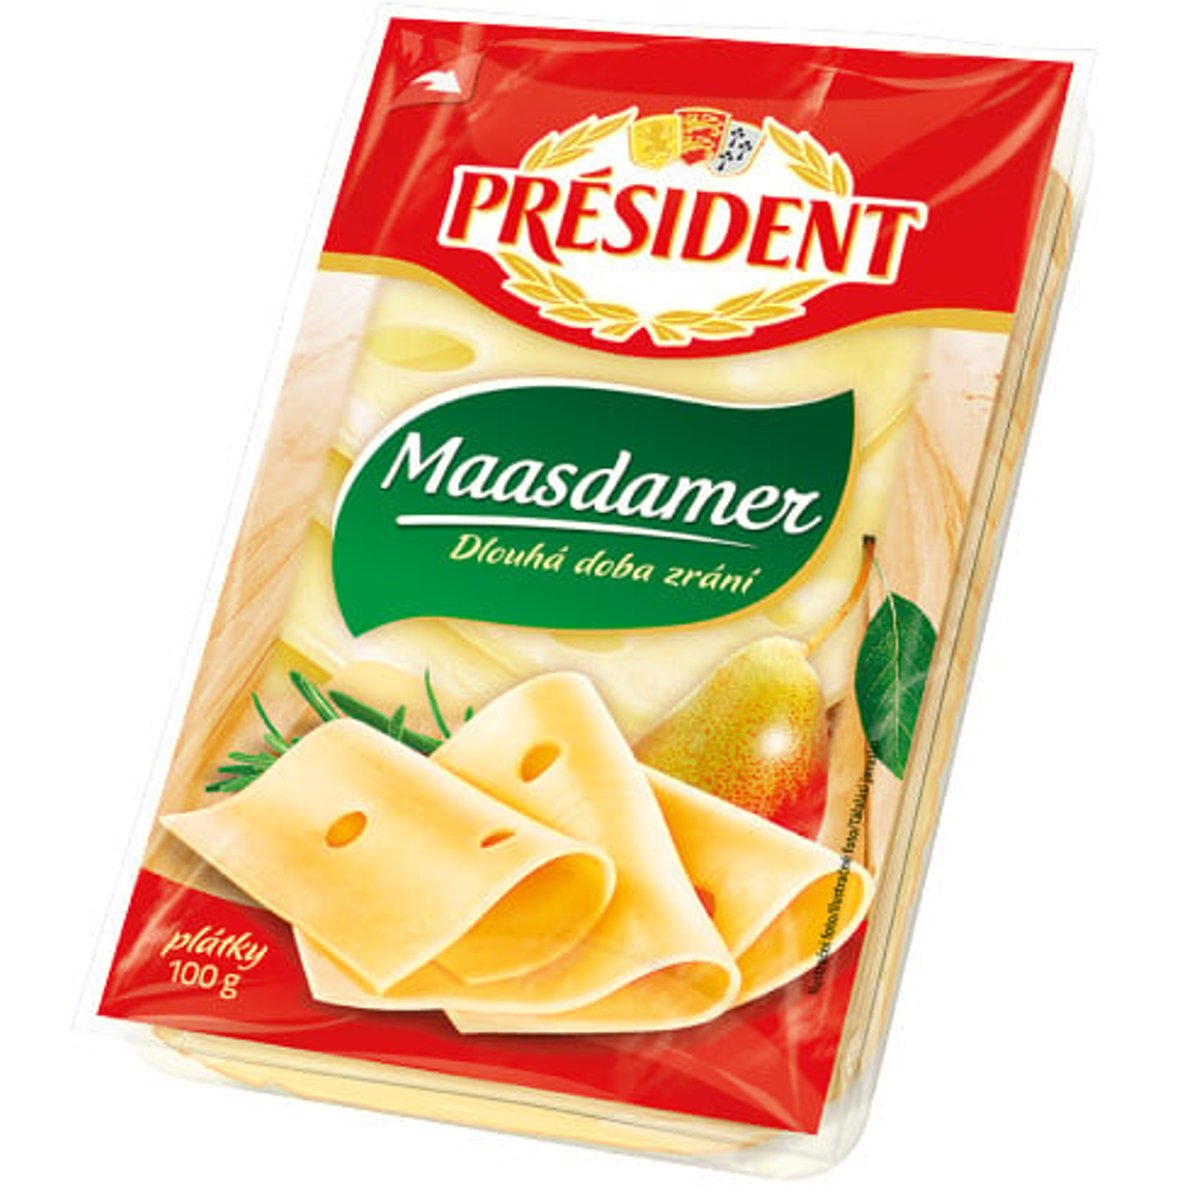 Président Maasdamer plátkový sýr